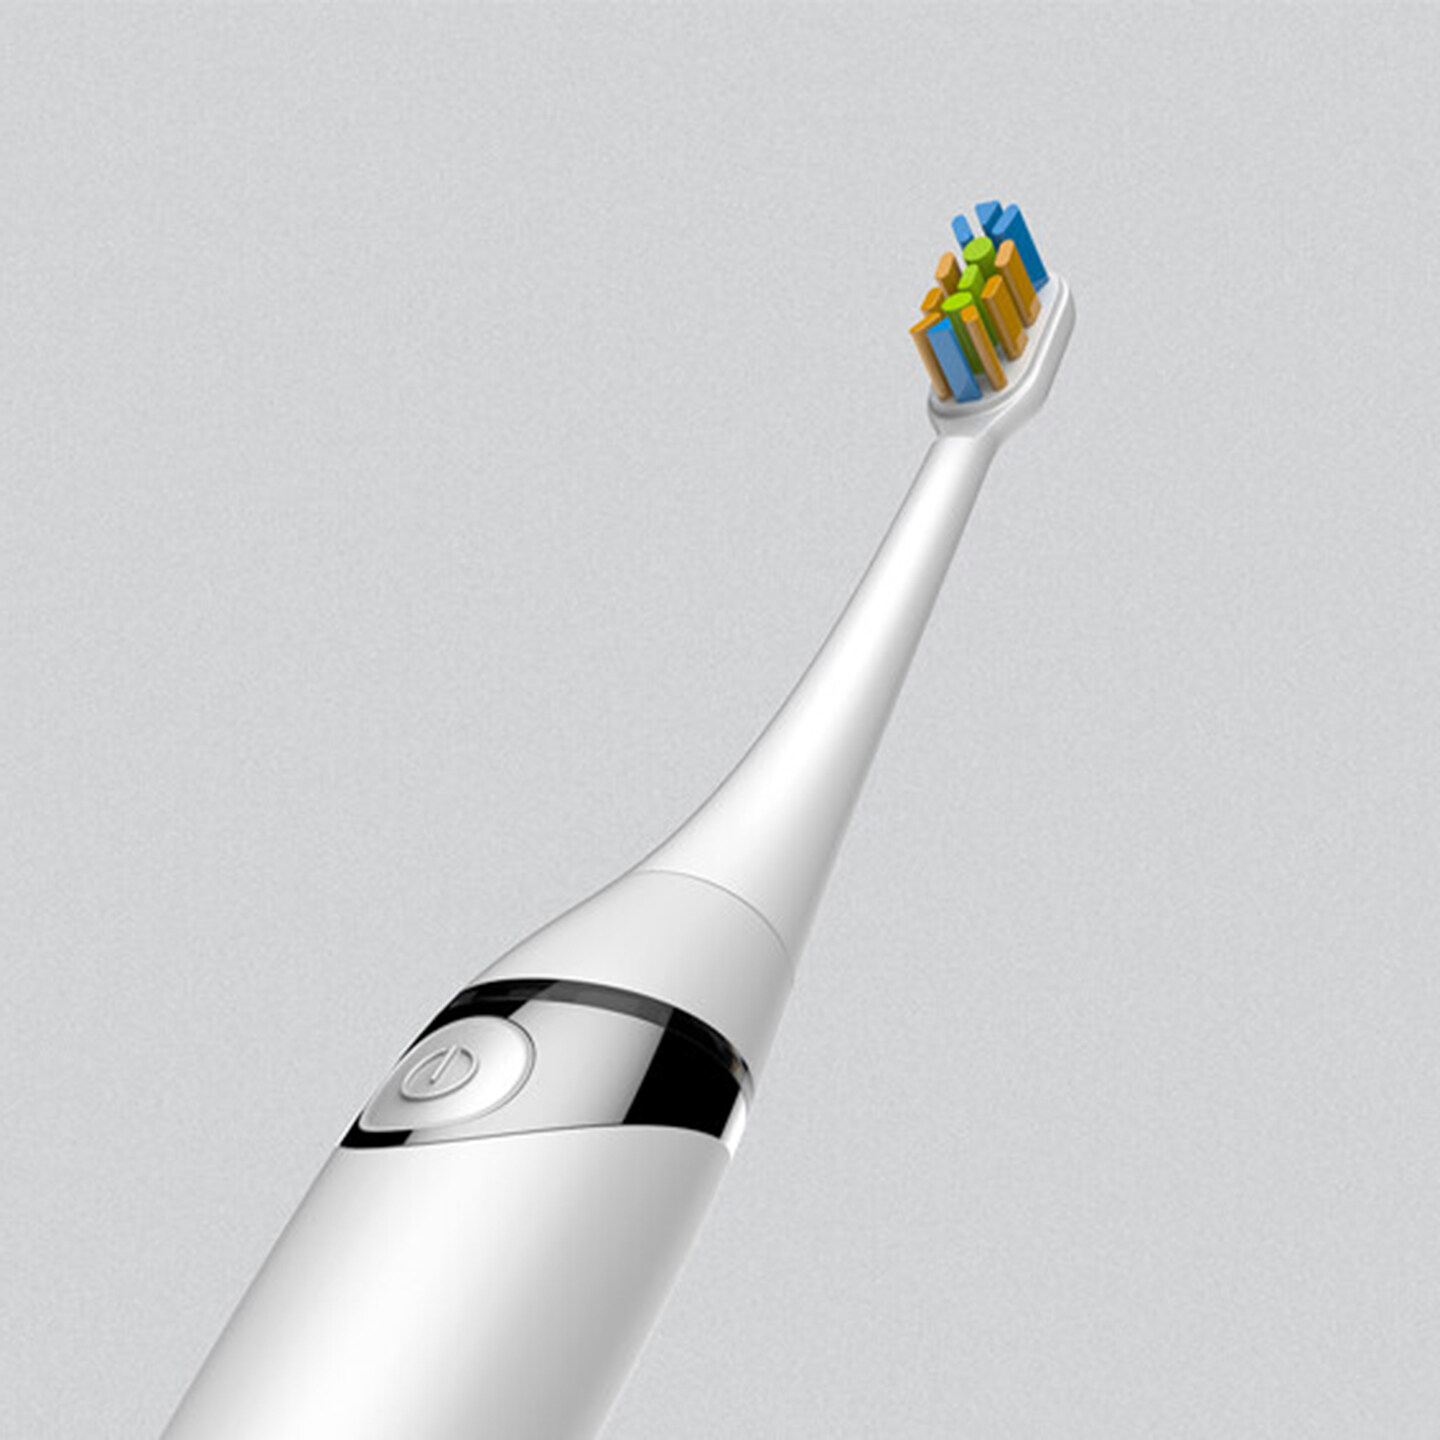 儿童电动牙刷设计-360度儿童旋转电动牙刷设计